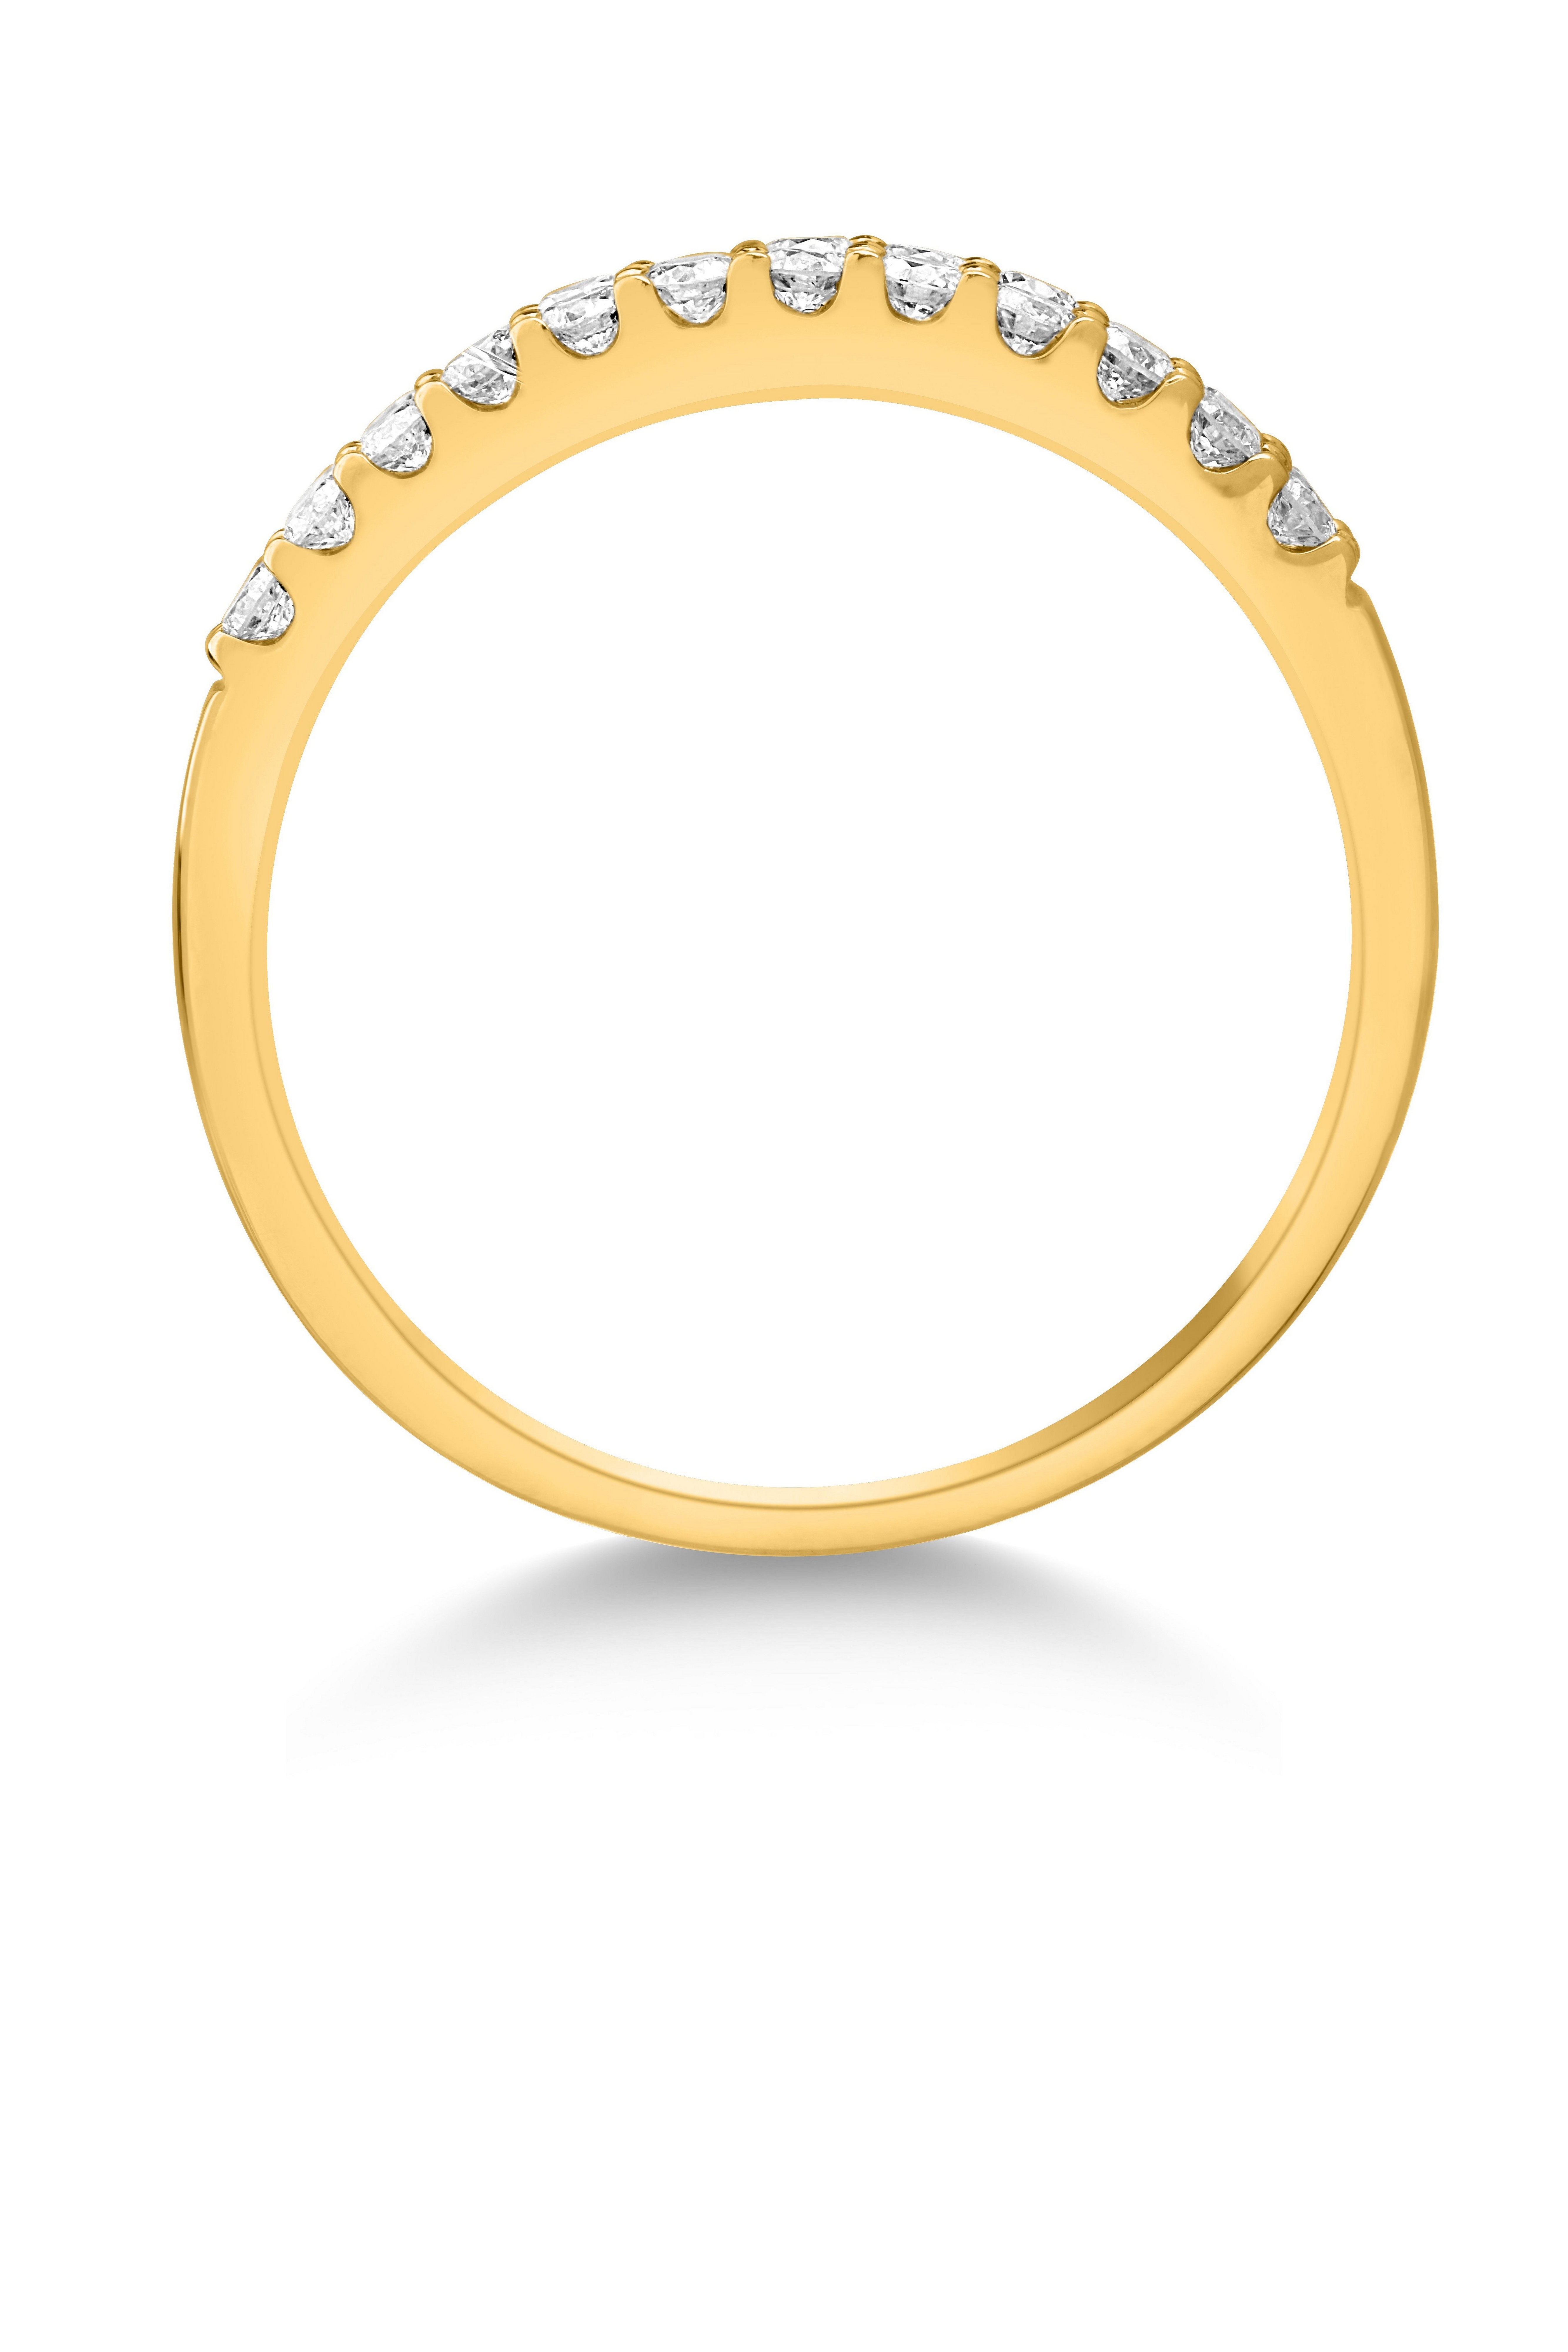 14 karátos sárga arany gyűrű 0.504 karátos gyémántokkal